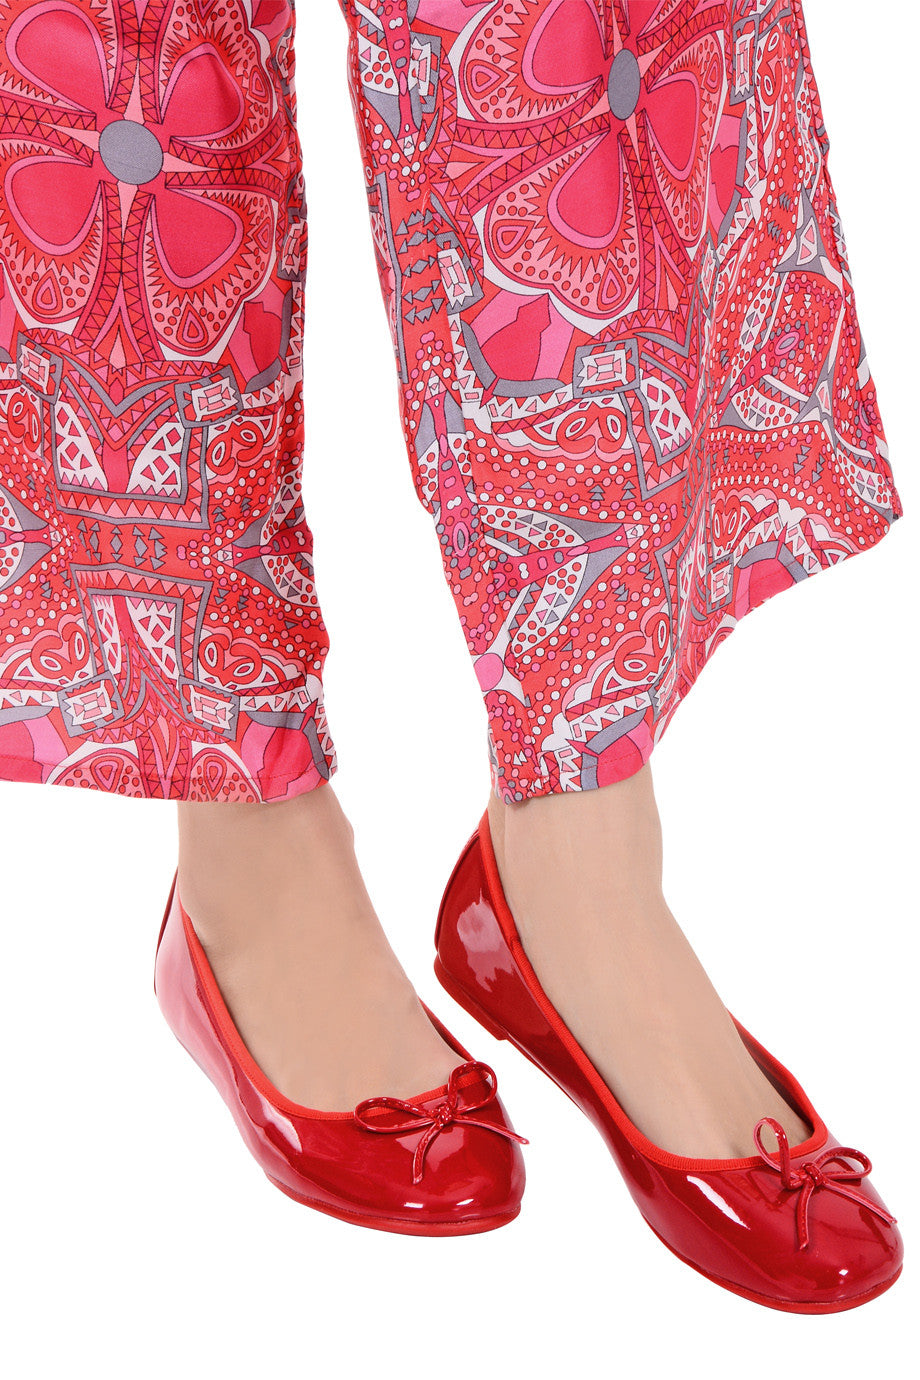 Κόκκινες Λουστρίνι Μπαλαρίνες - Francesco Milano | Γυναικεία Παπούτσια